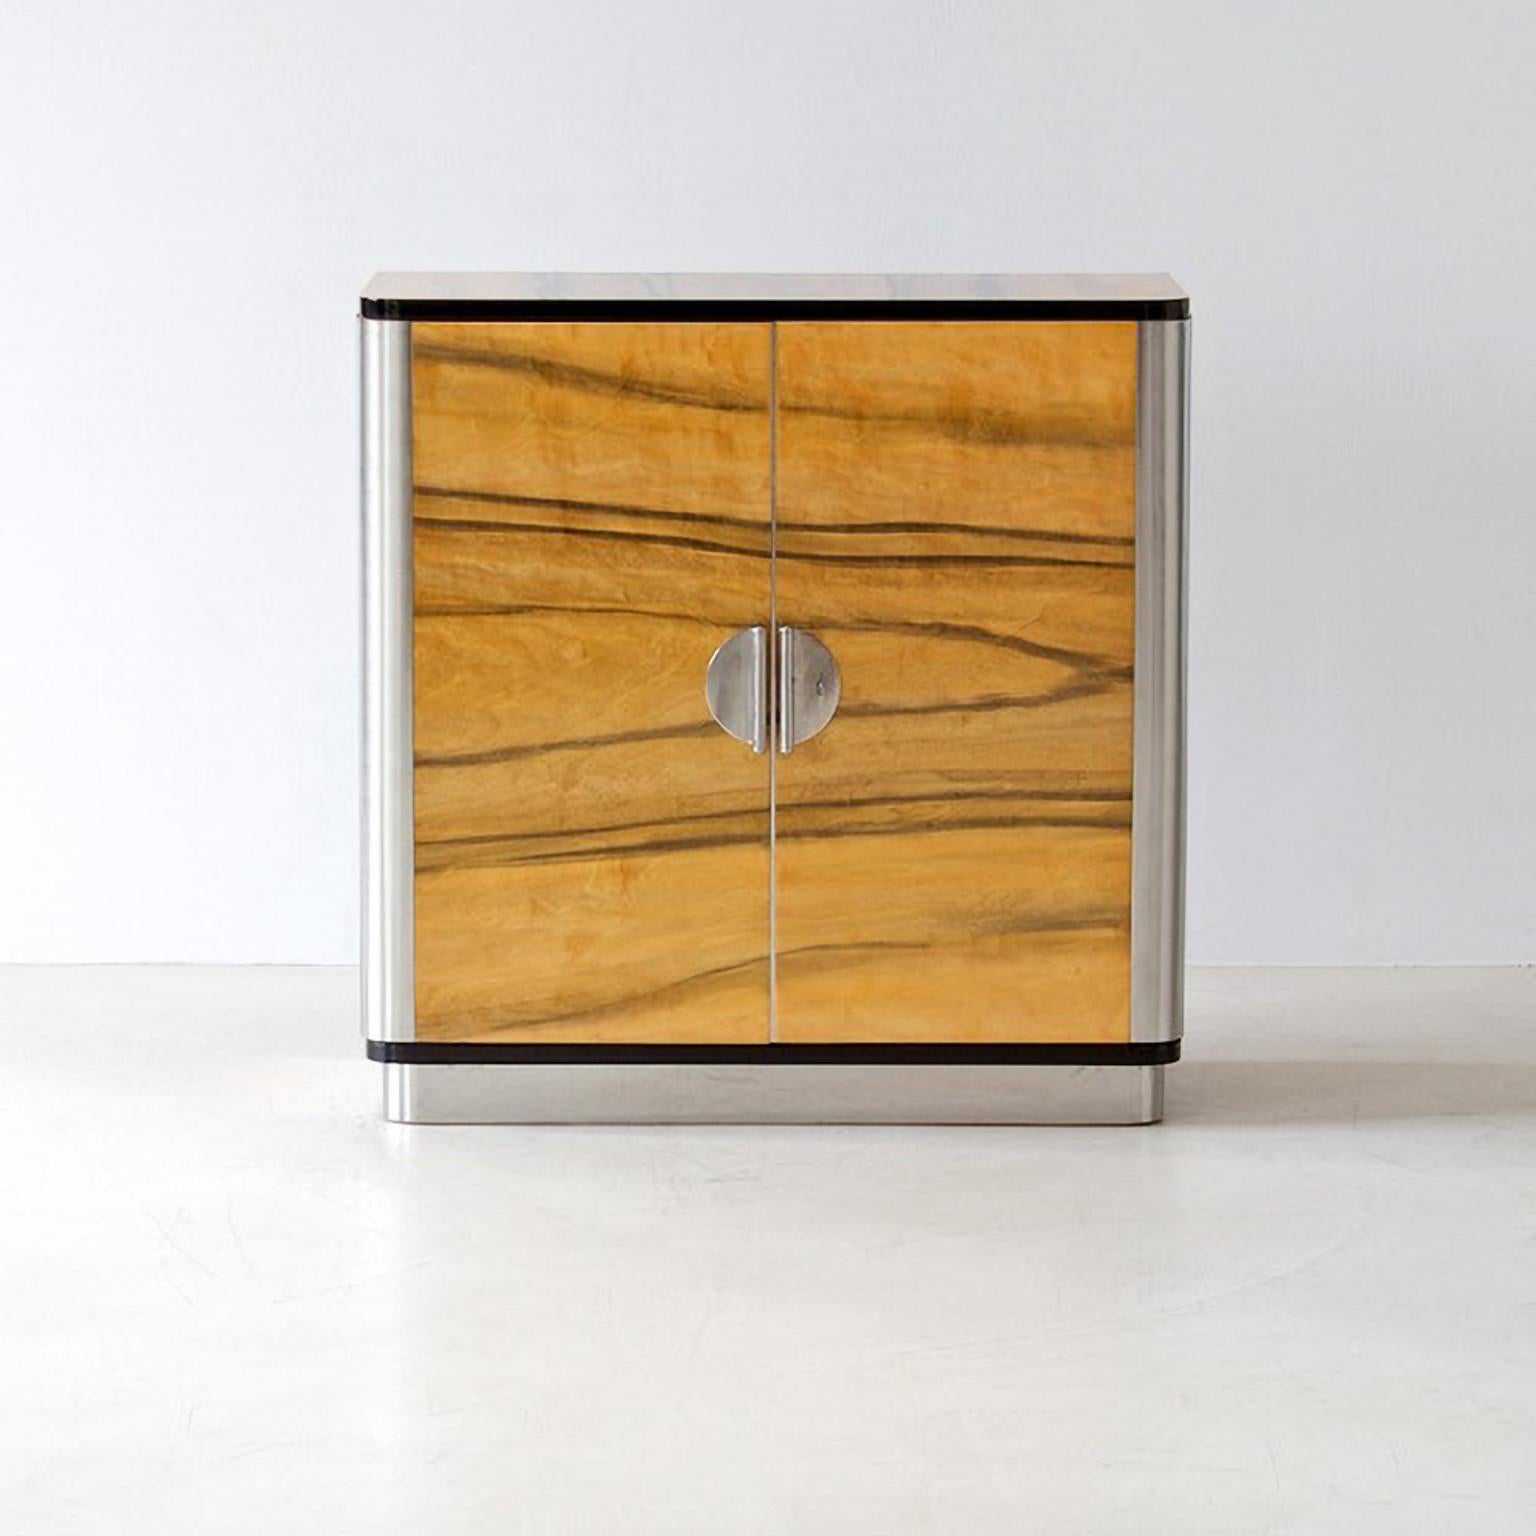 German Bespoke Modernist Two Door Sideboard in Veneered Wood and Chrome Plated Metal For Sale